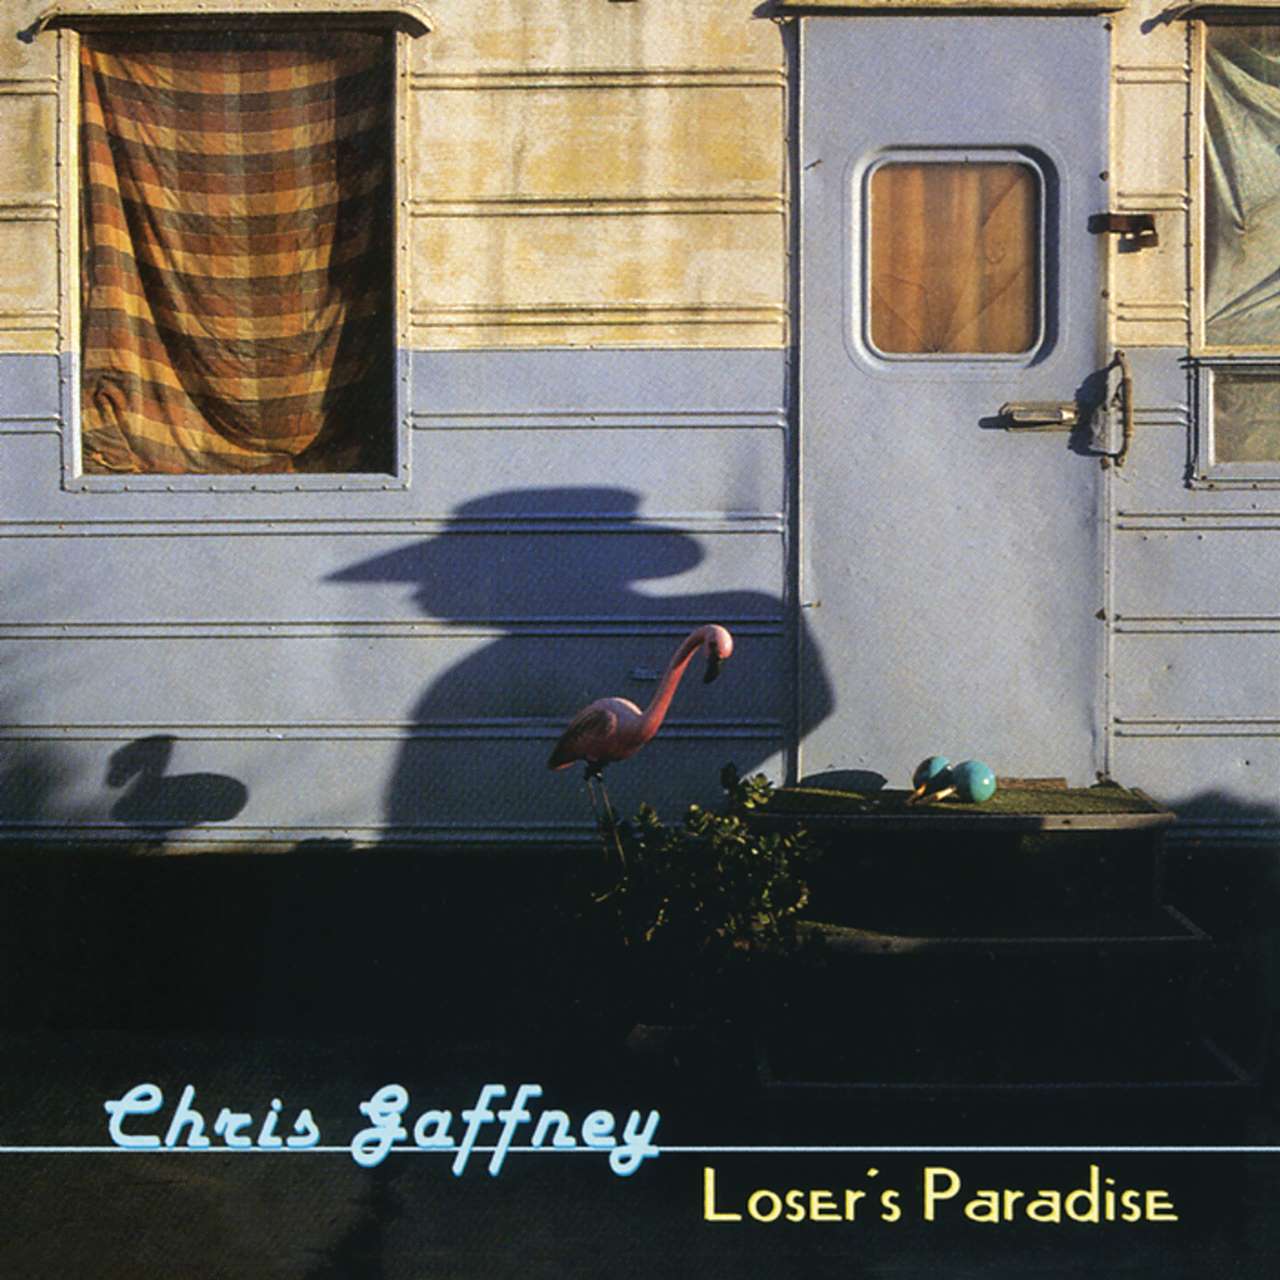 Chris Gaffney - Loser's Paradise cover album